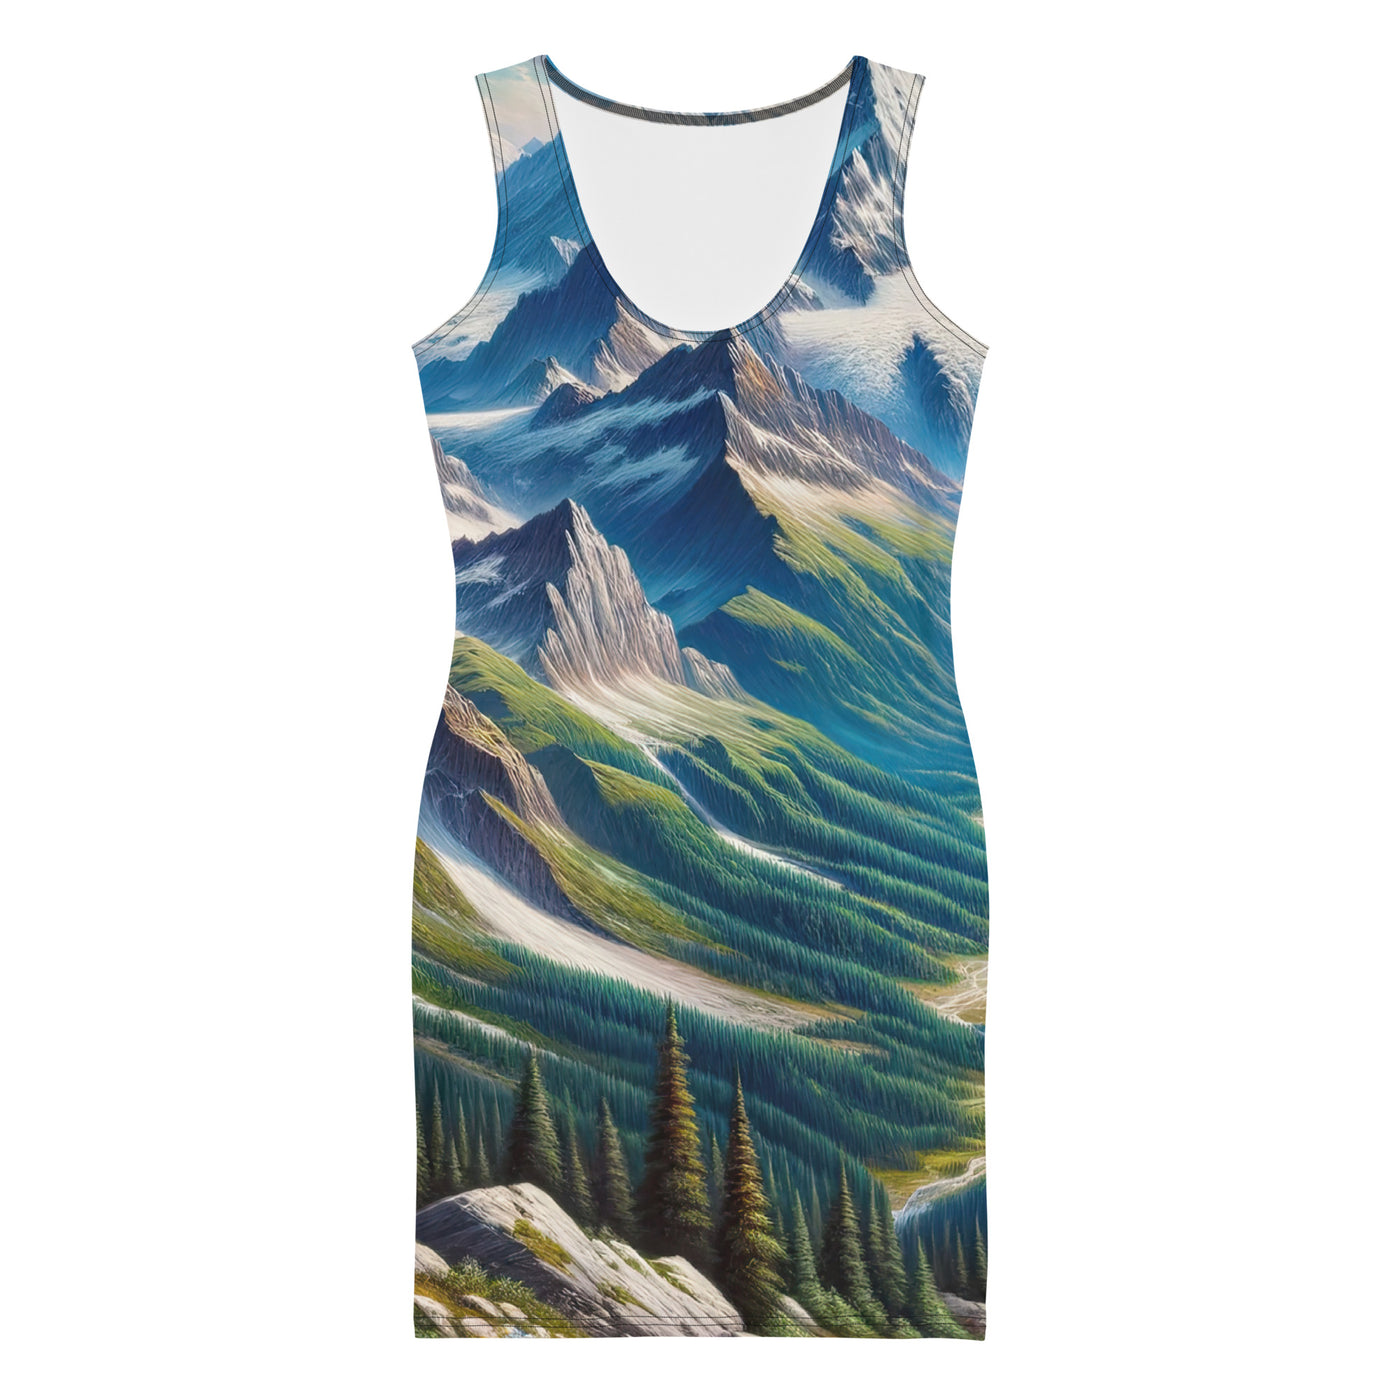 Panorama-Ölgemälde der Alpen mit schneebedeckten Gipfeln und schlängelnden Flusstälern - Langes Damen Kleid (All-Over Print) berge xxx yyy zzz XL